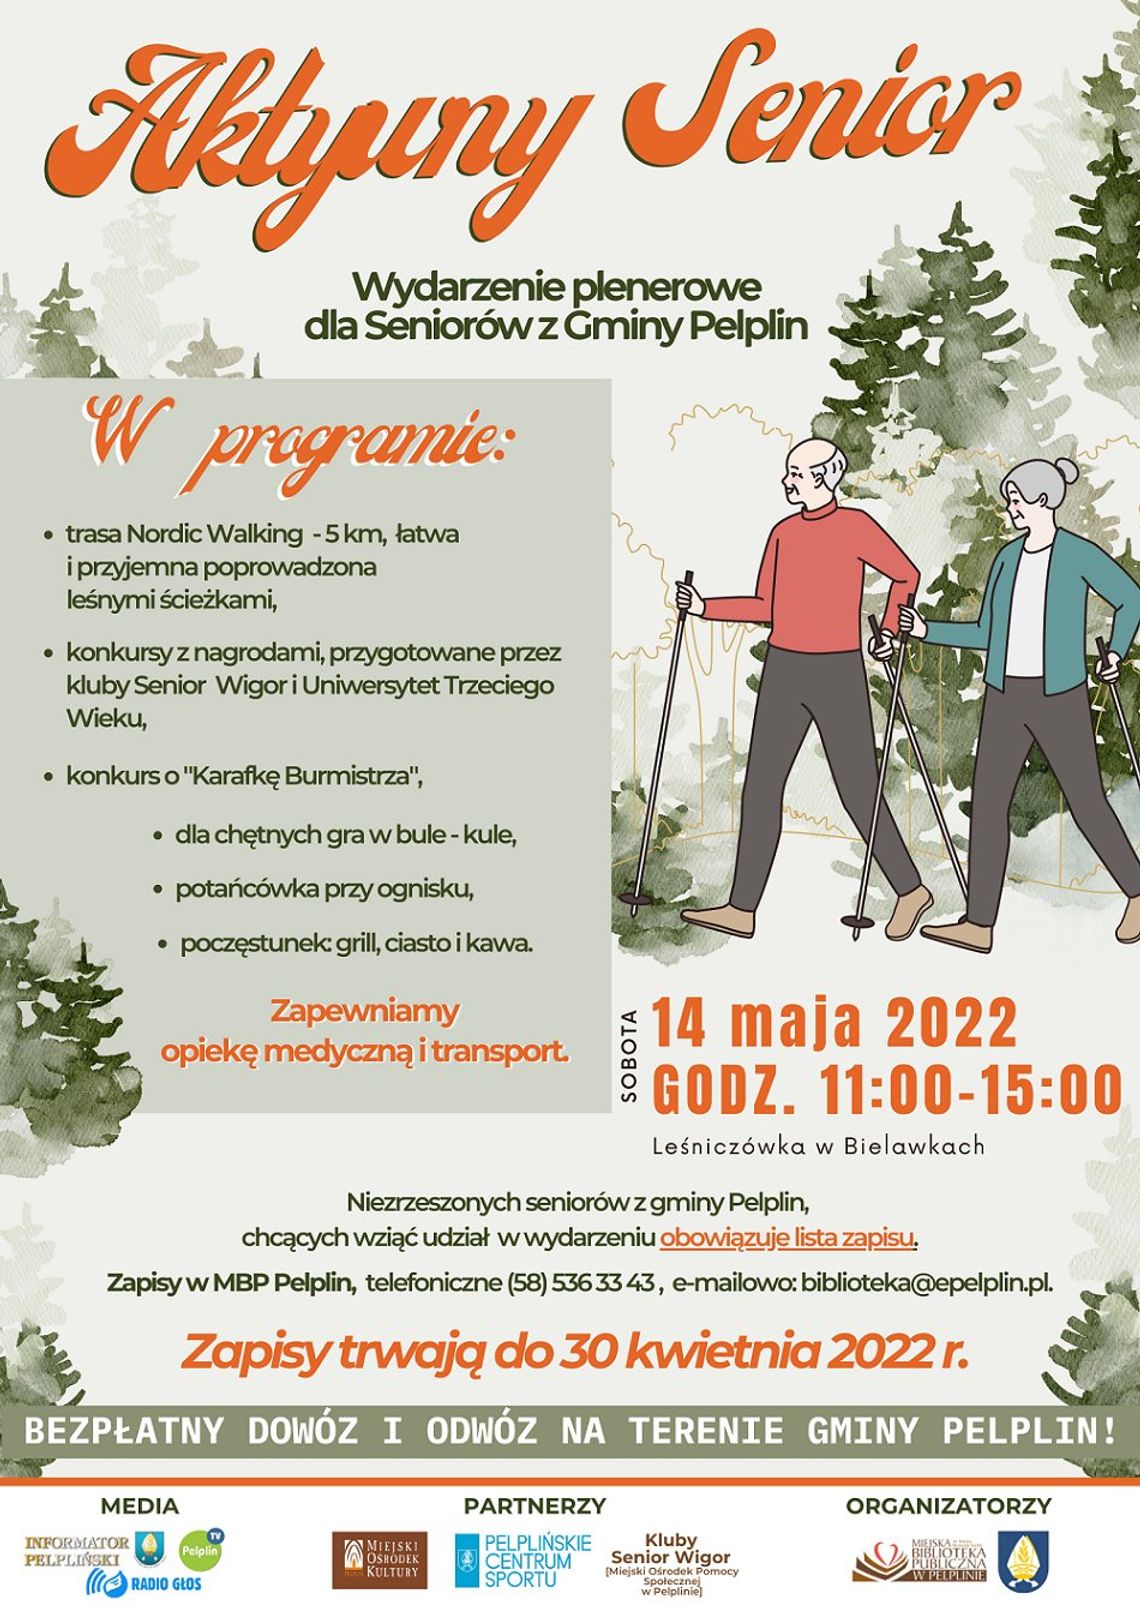 Aktywny Senior - wydarzenie plenerowe dla seniorów z gminy Pelplin